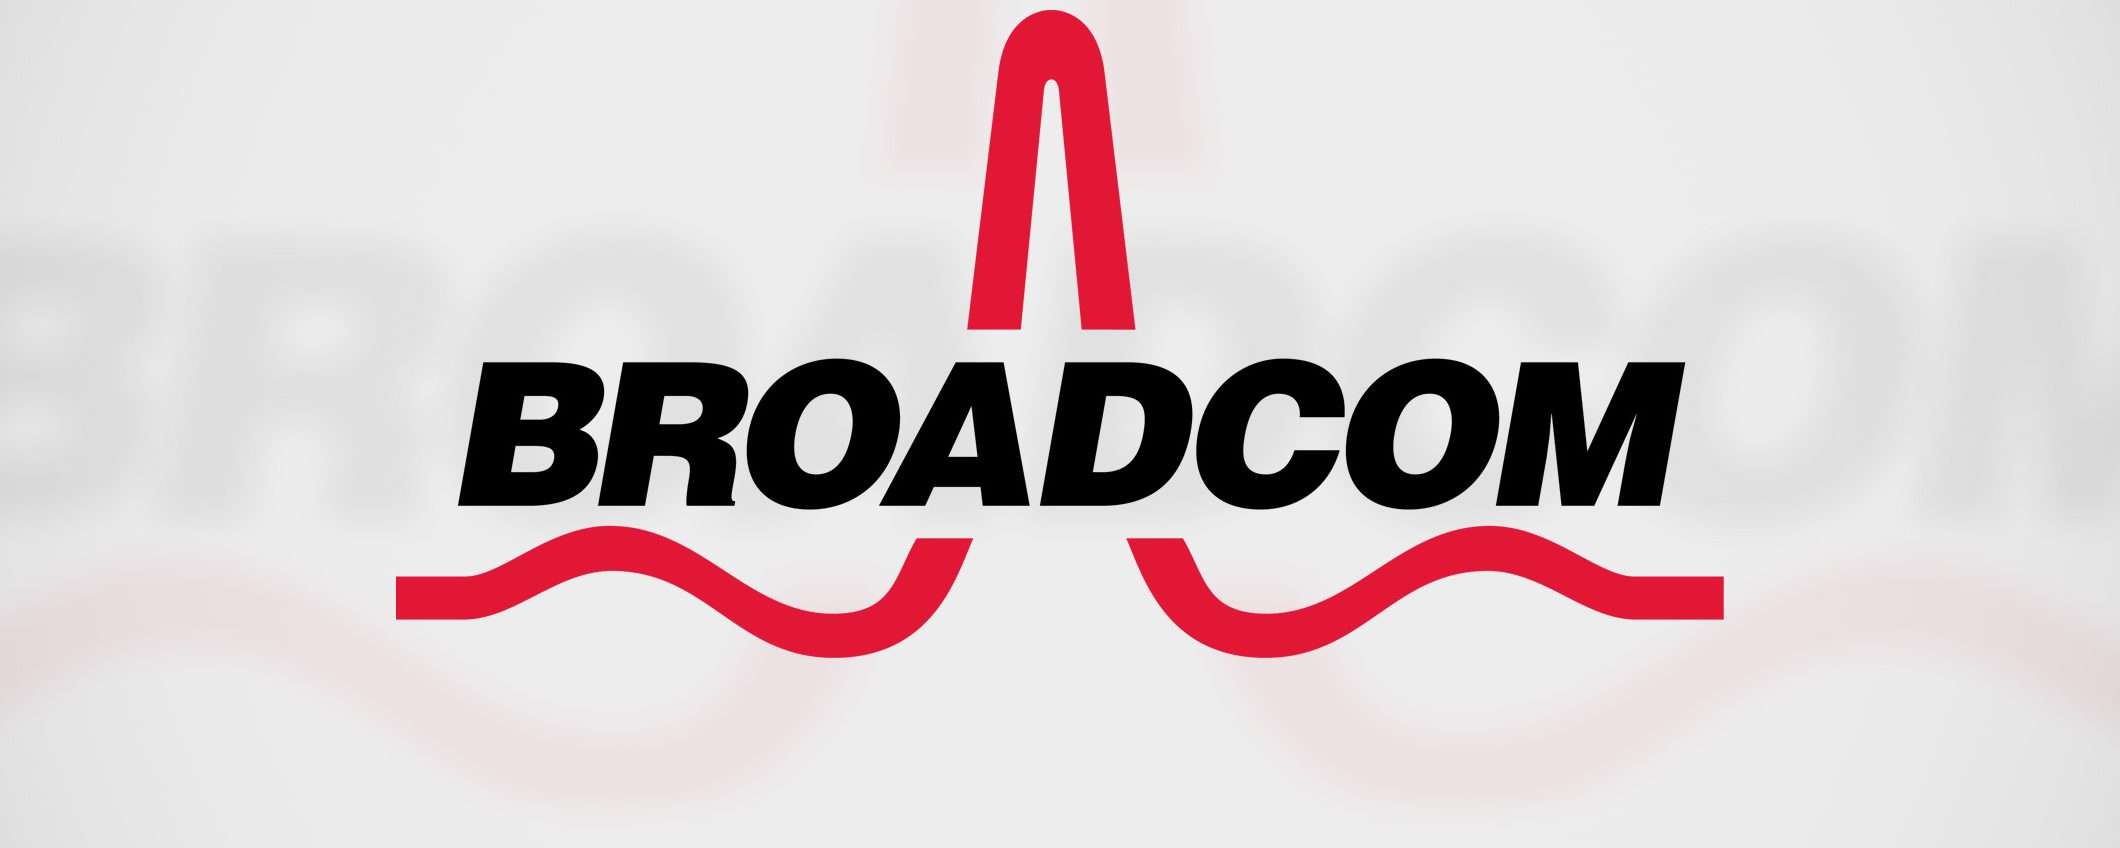 Broadcom-VMware: acquisizione monstre da 60 miliardi?